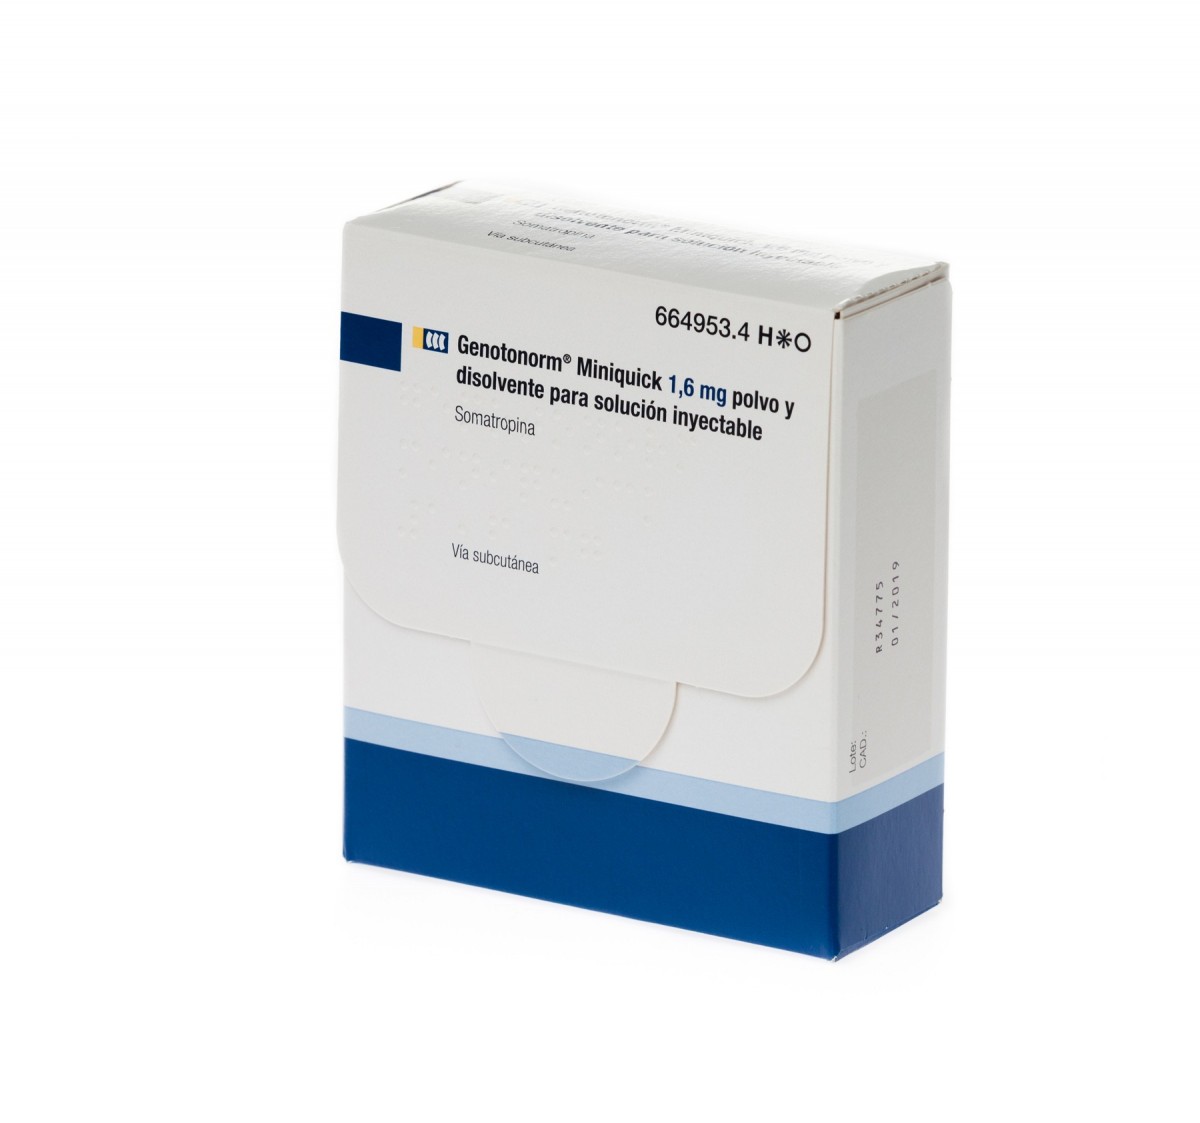 GENOTONORM MINIQUICK 1,6 mg POLVO Y DISOLVENTE PARA SOLUCION INYECTABLE , 7 viales de doble cámara fotografía del envase.